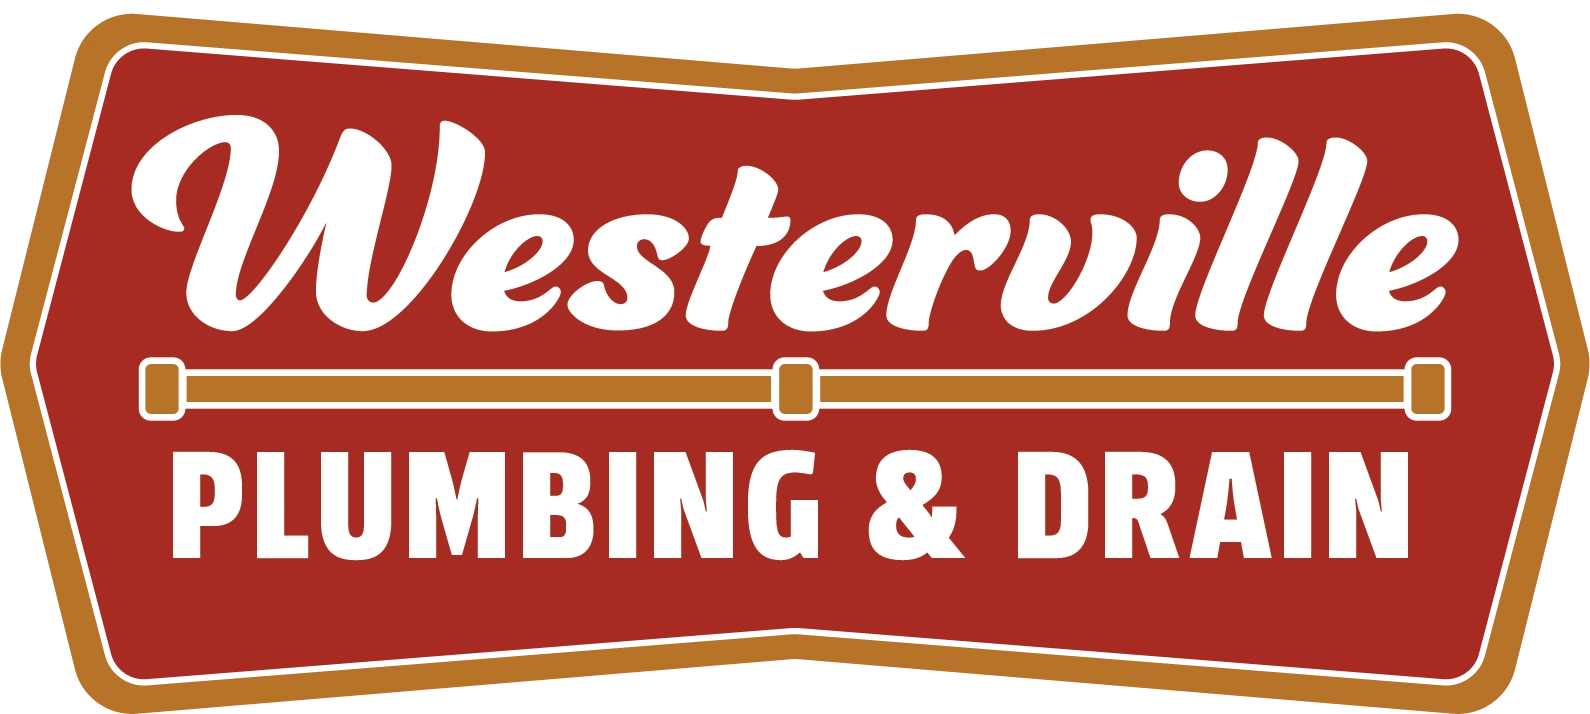 Westerville Plumbing & Drain Logo